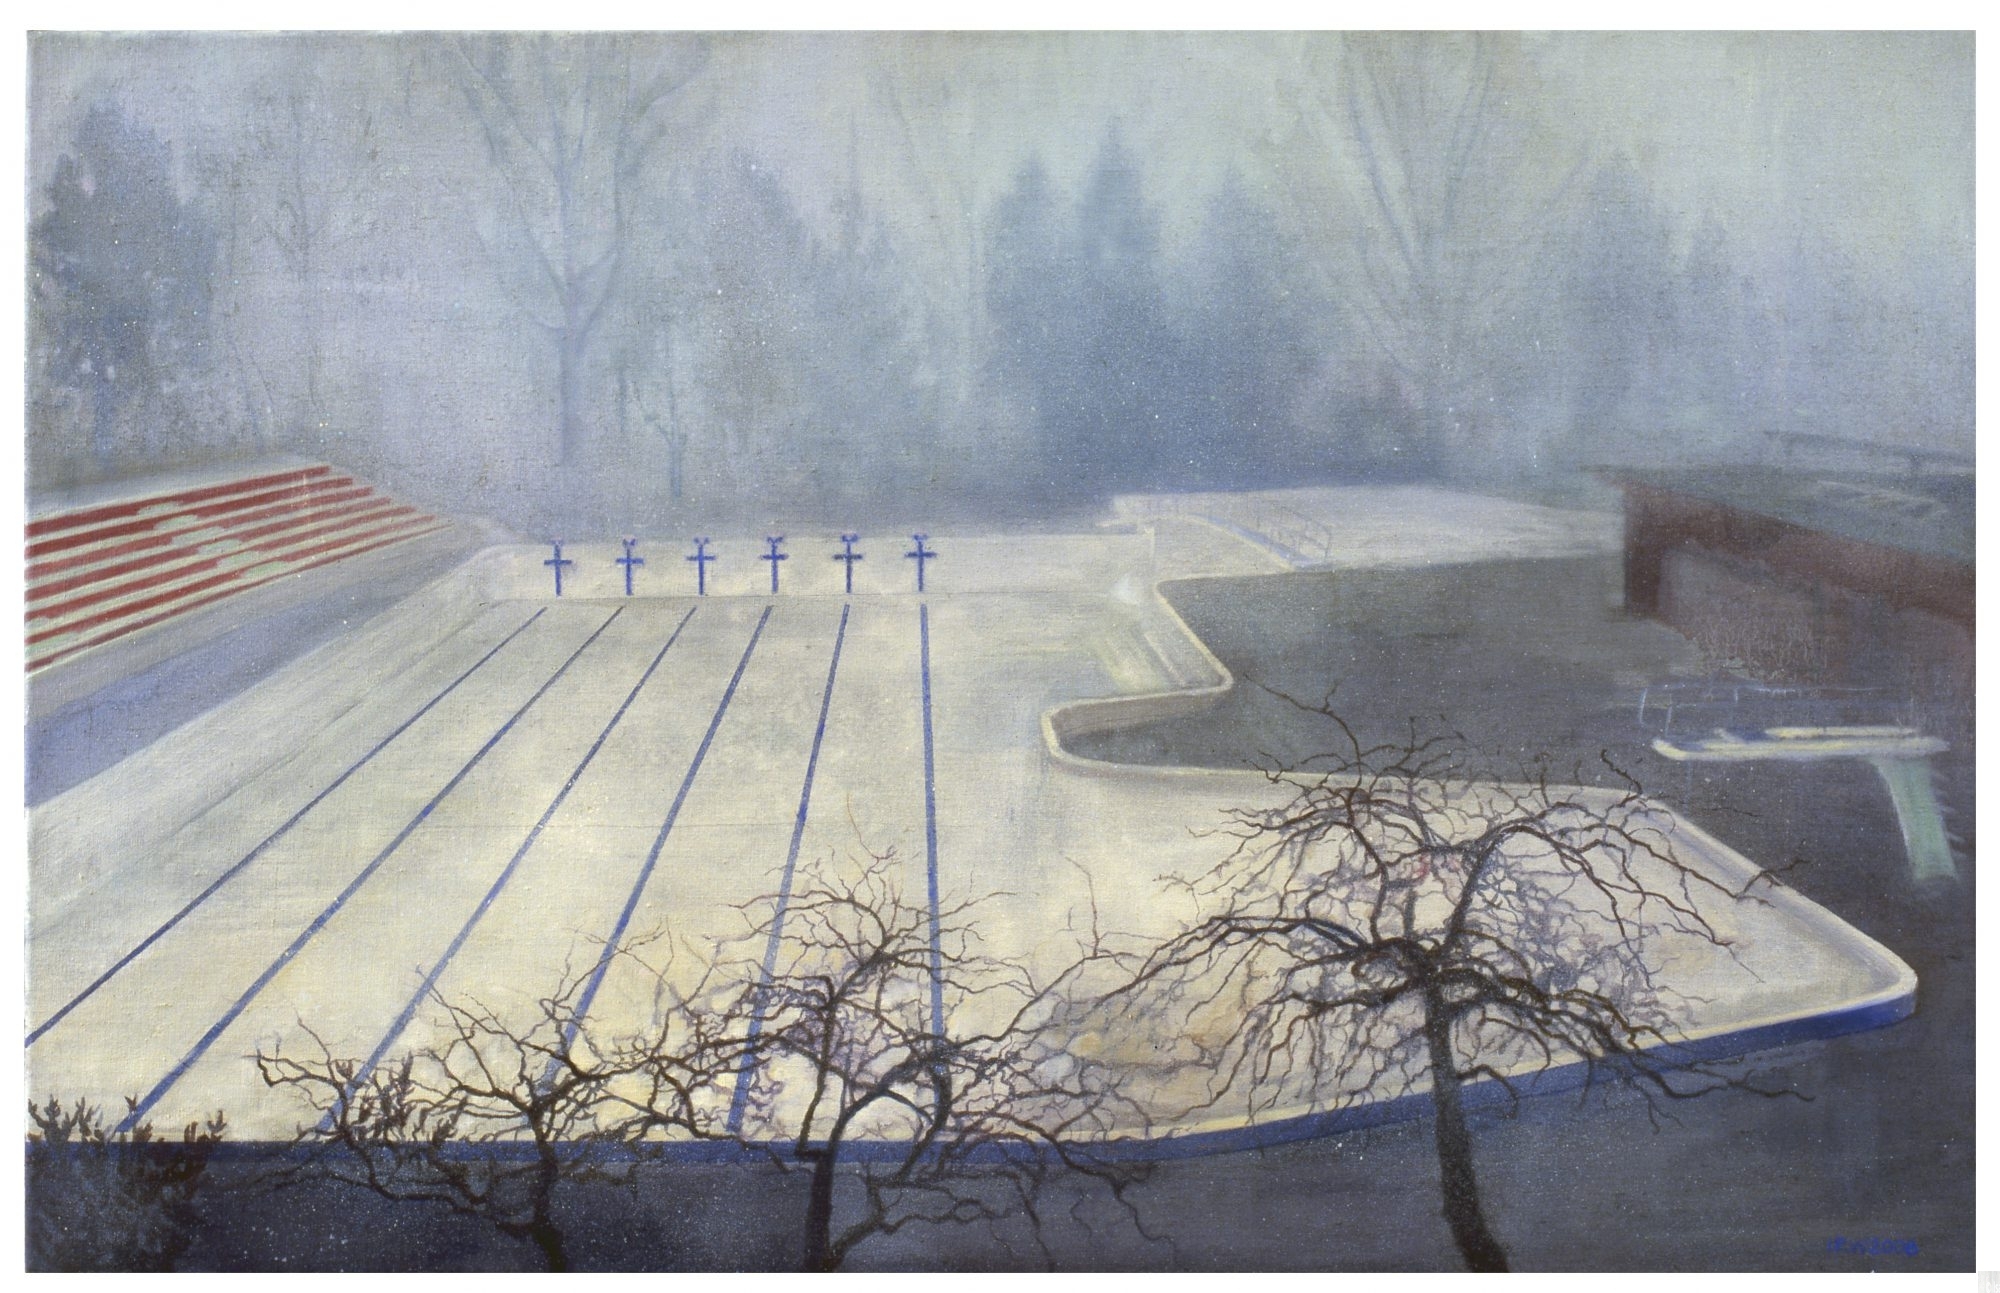 Schilderij isabella werkhoven leeg zwembad in de mist collectie Achmea